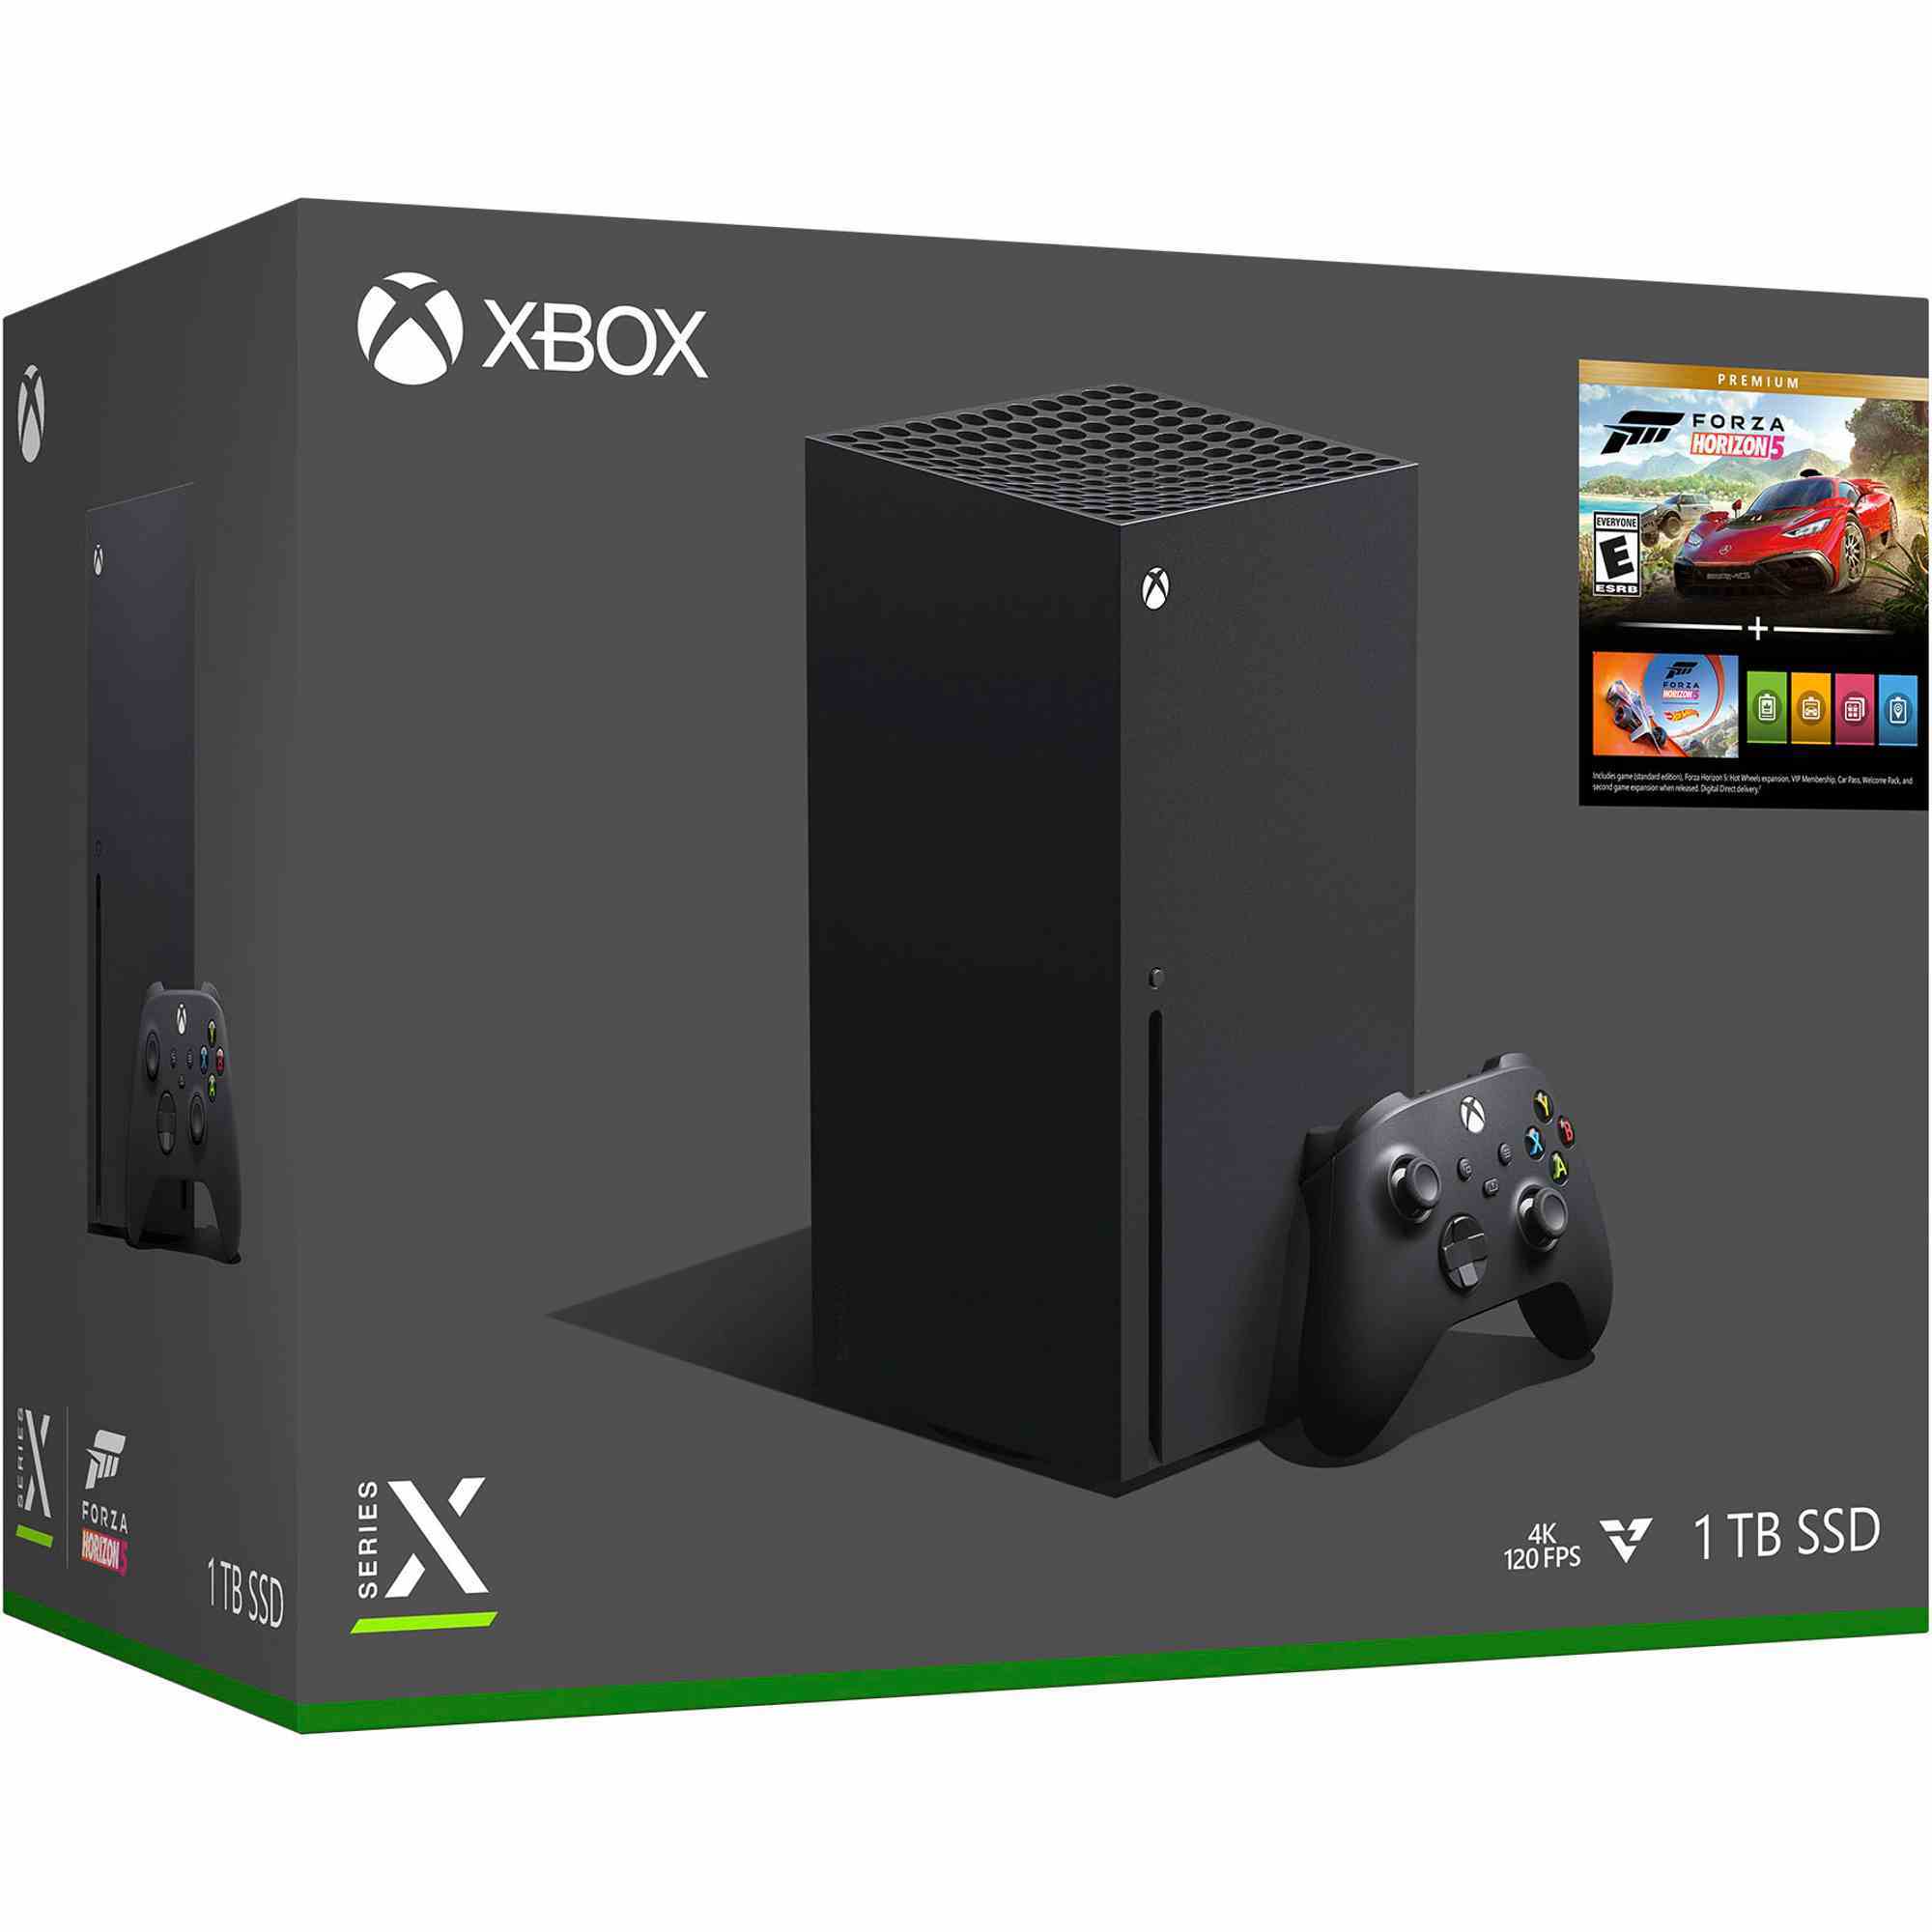 Xbox Series X — Forza Horizon 5 Paketi perakende kutusu.